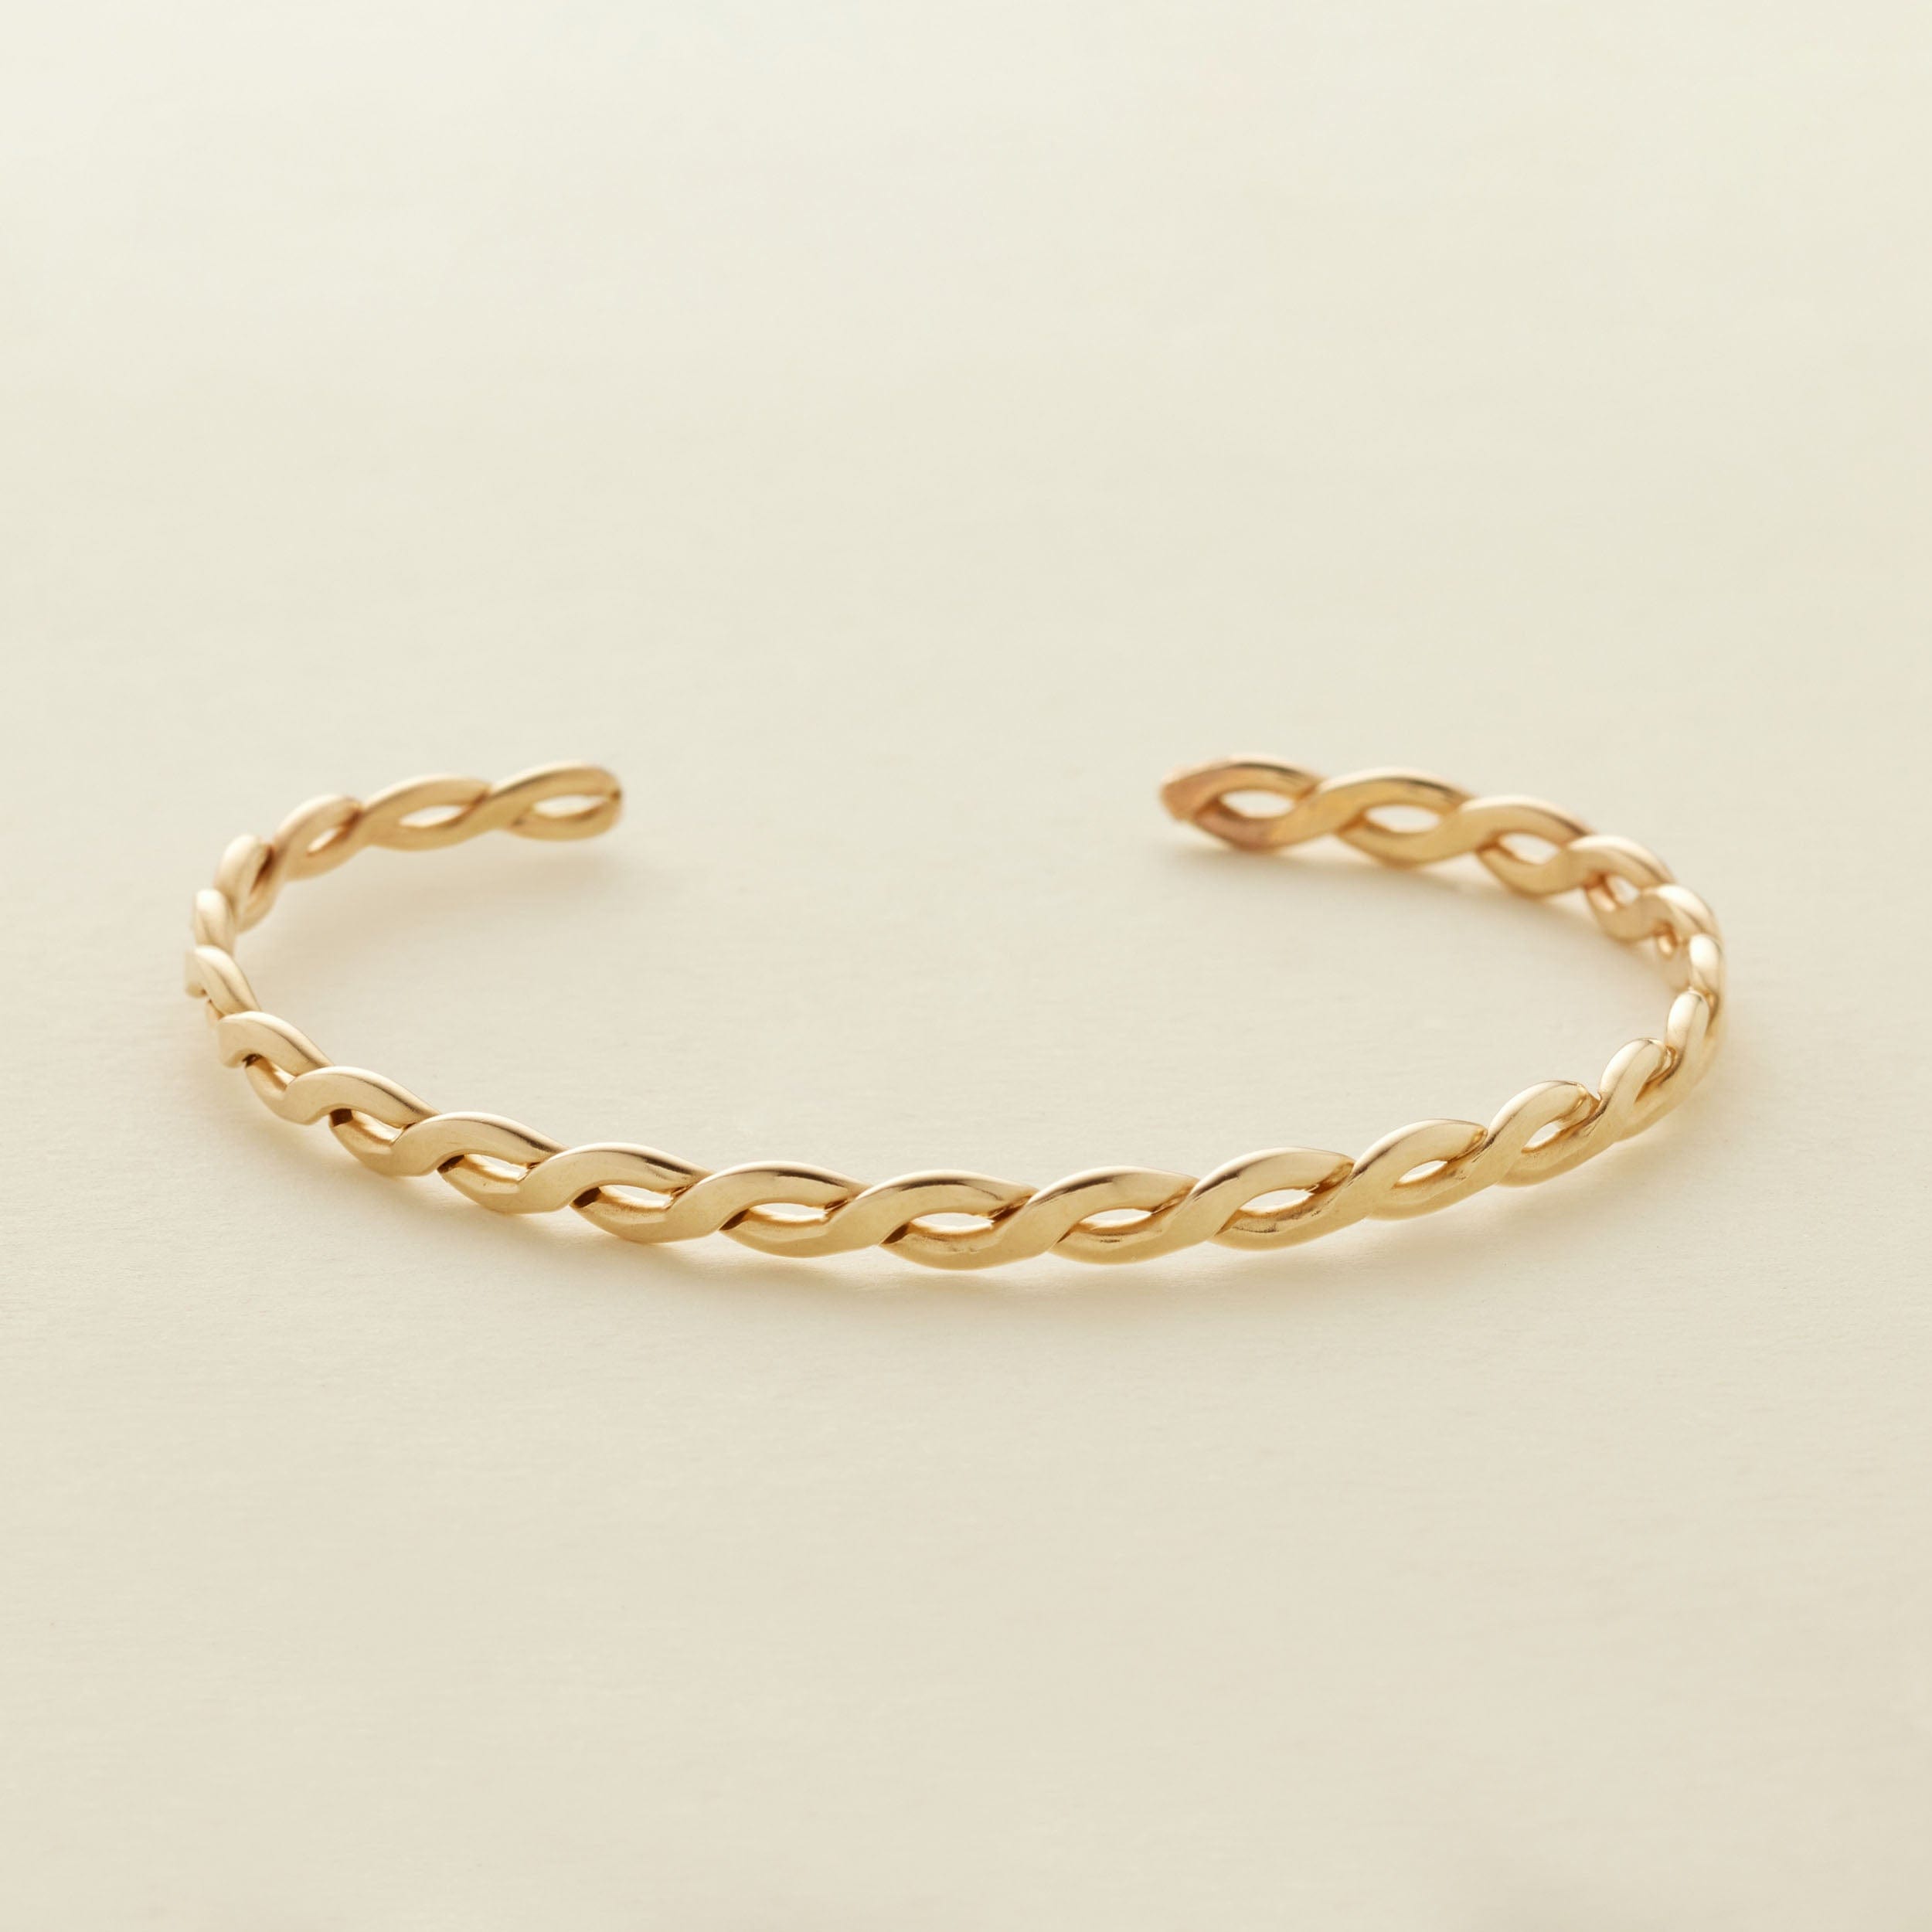 Laurel Cuff Bracelet Gold Filled / 6" Bracelet